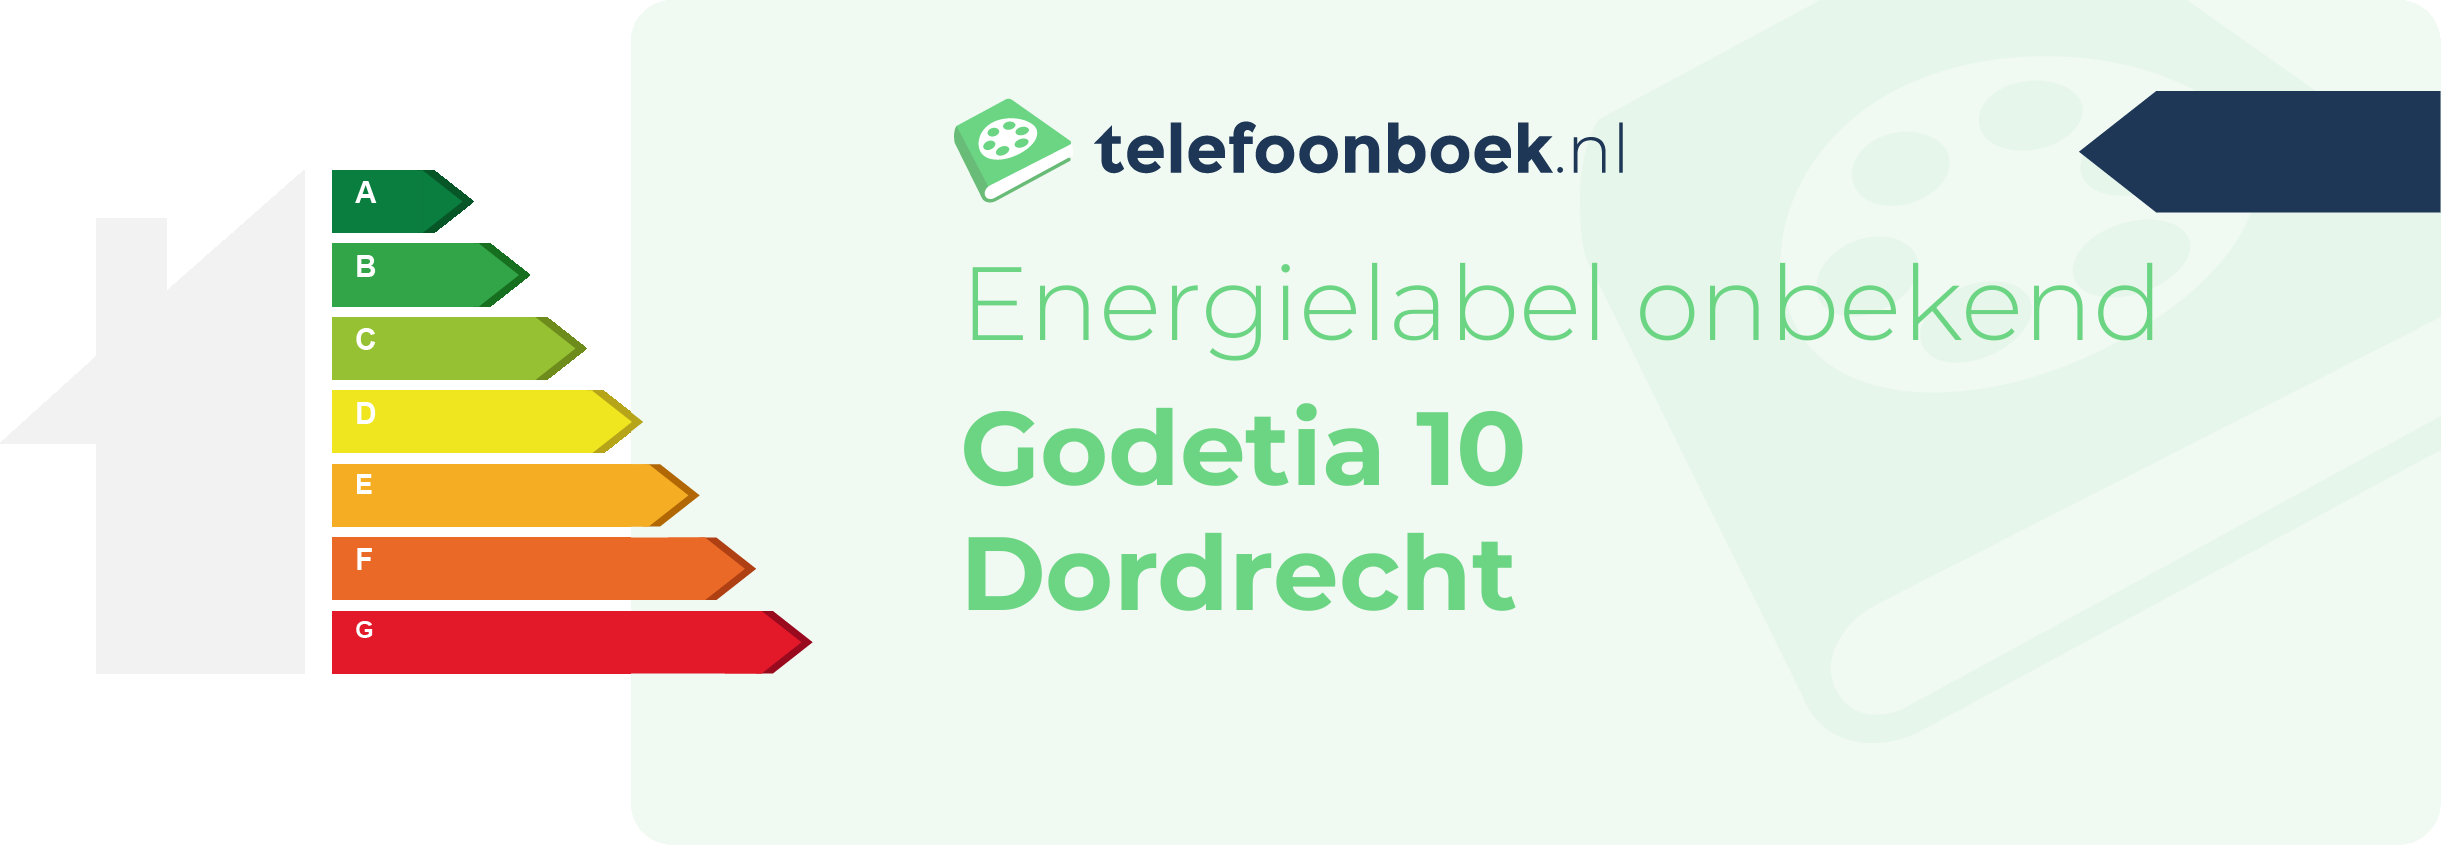 Energielabel Godetia 10 Dordrecht